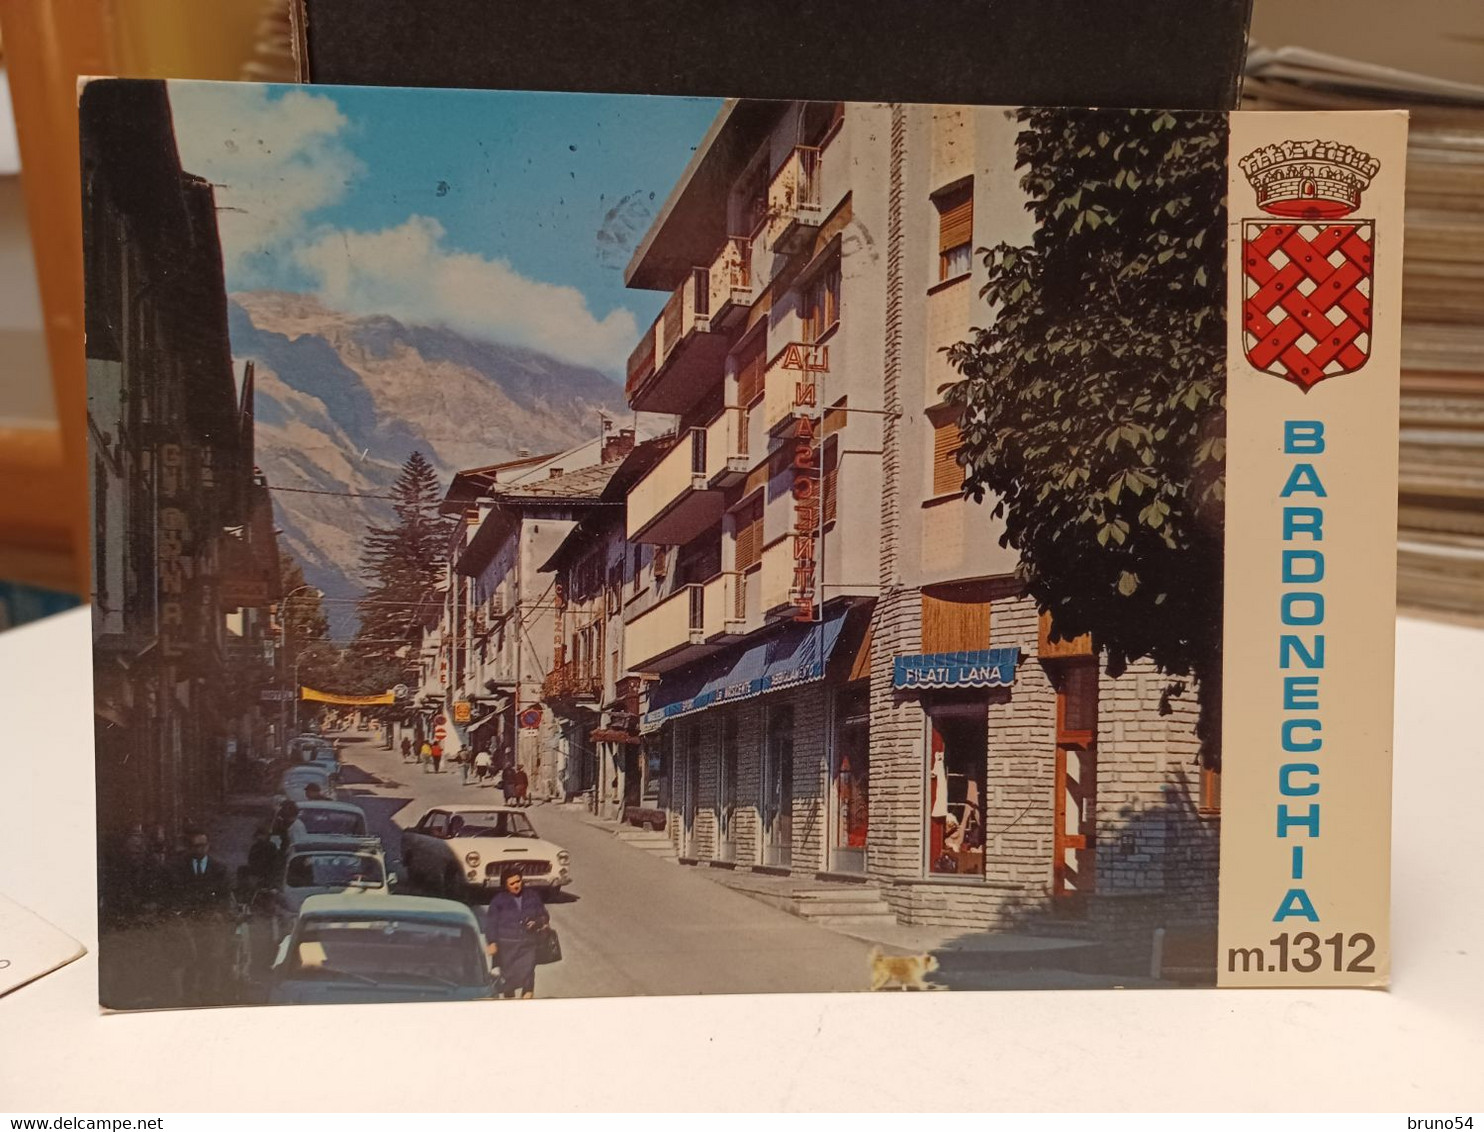 2 Cartoline Bardonecchia Provincia Di Torino Anni 70,via Medail ,rifugio Sommeiller,lago E Colle,ghiacciao E Skilift - Other Monuments & Buildings